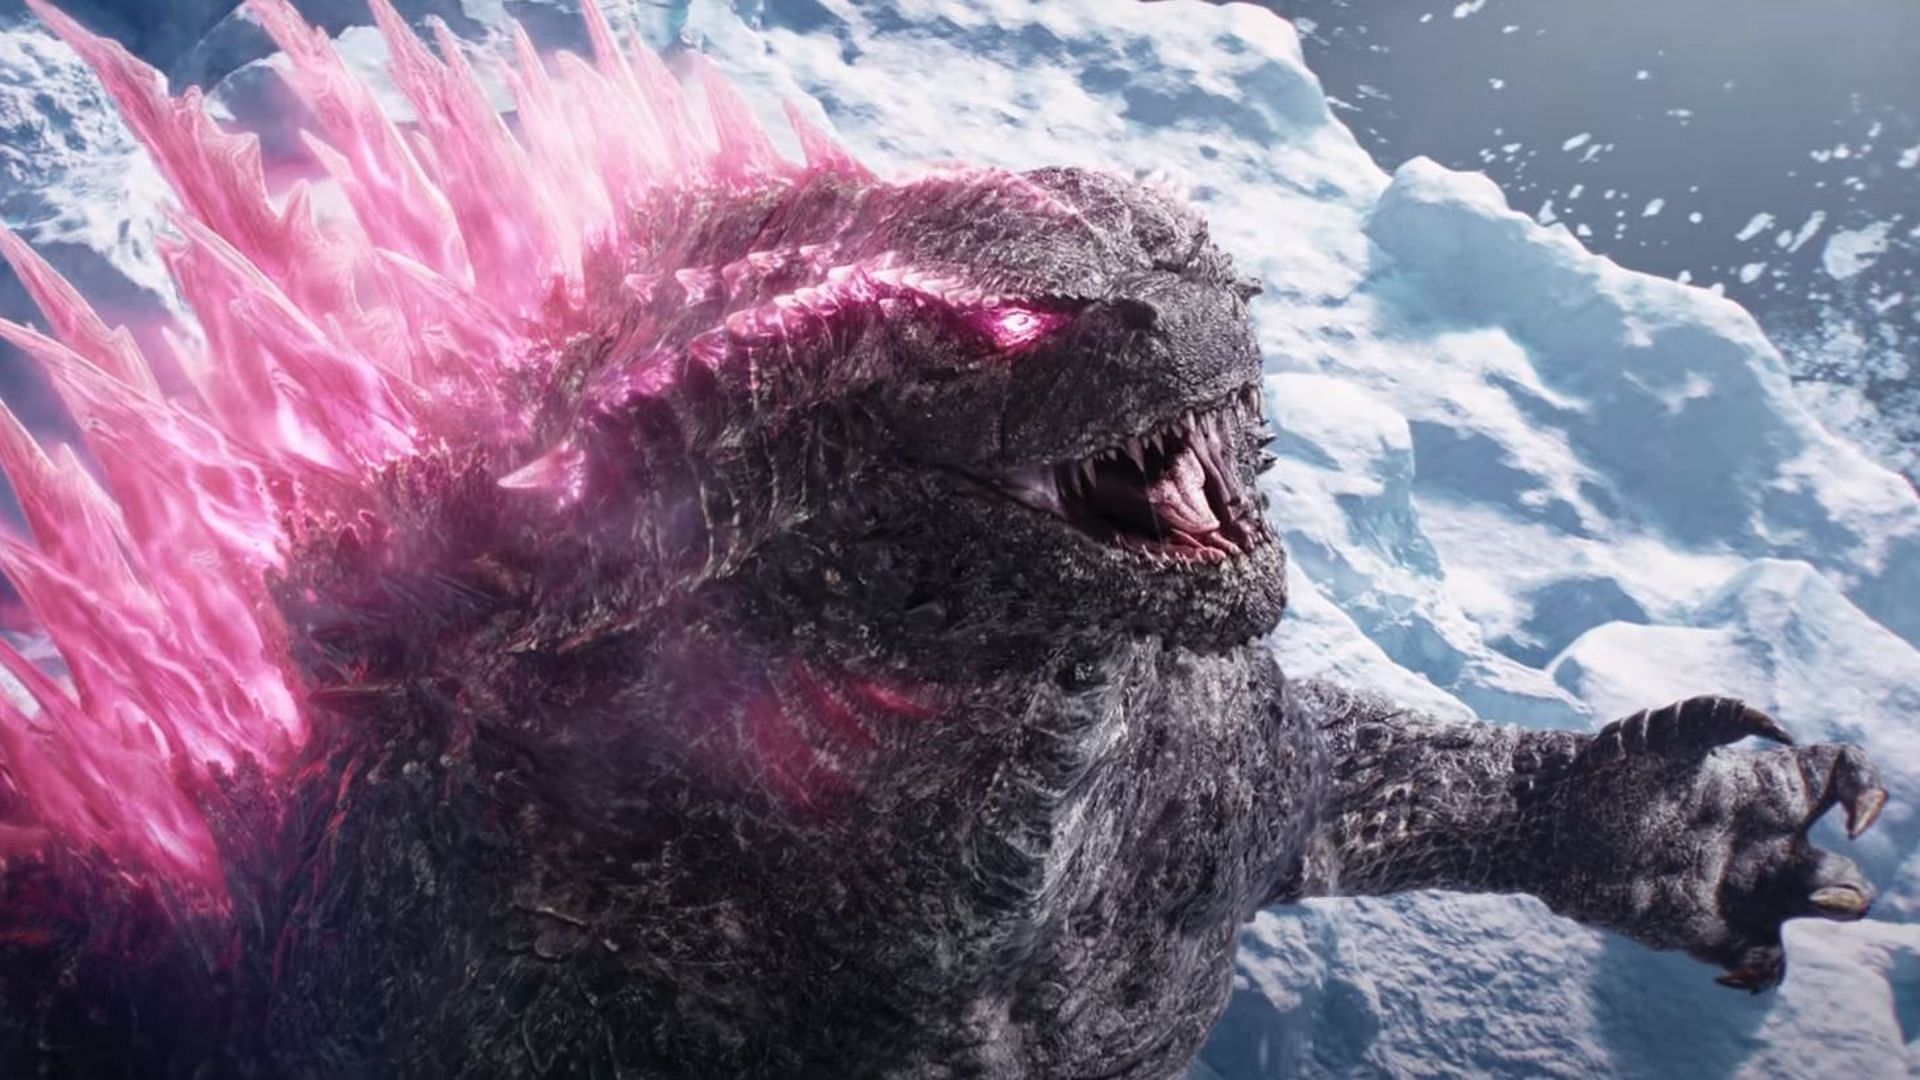 Godzilla kong new empire дата выхода